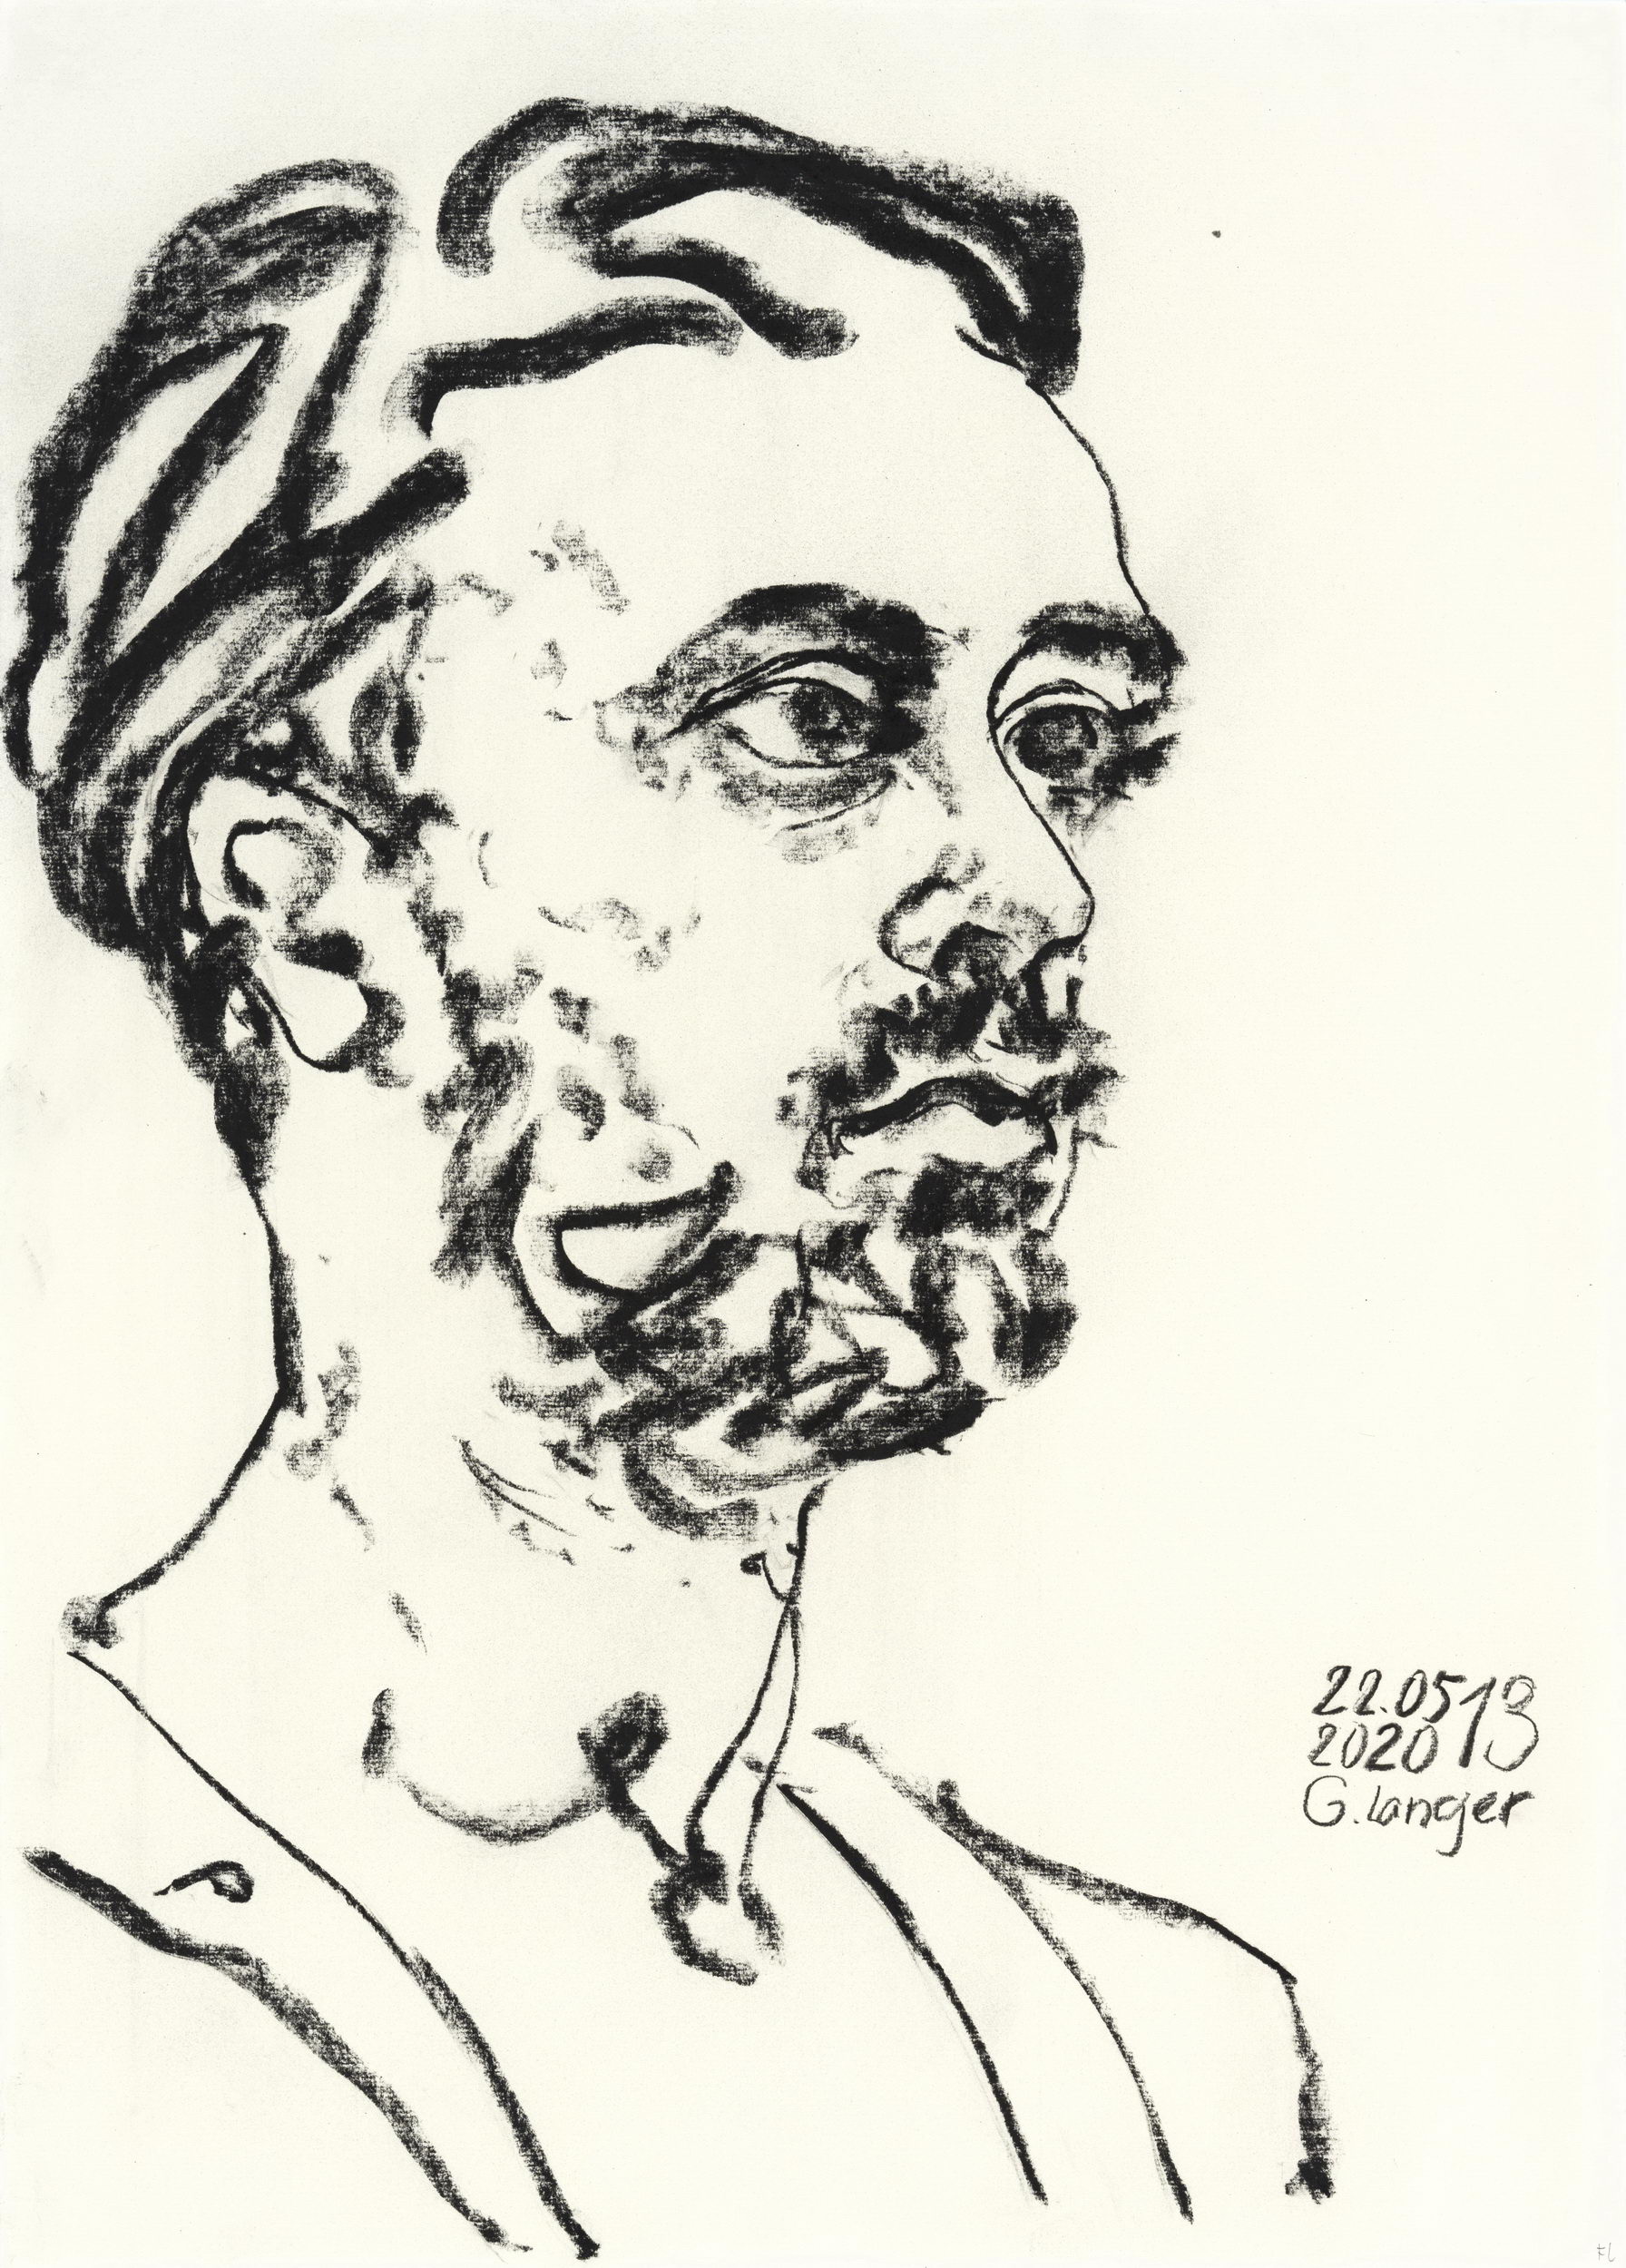 Gunter Langer, Mann mit Bart, 2020, Kohlezeichnung, Zeichenpapier, 70 x 50 cm